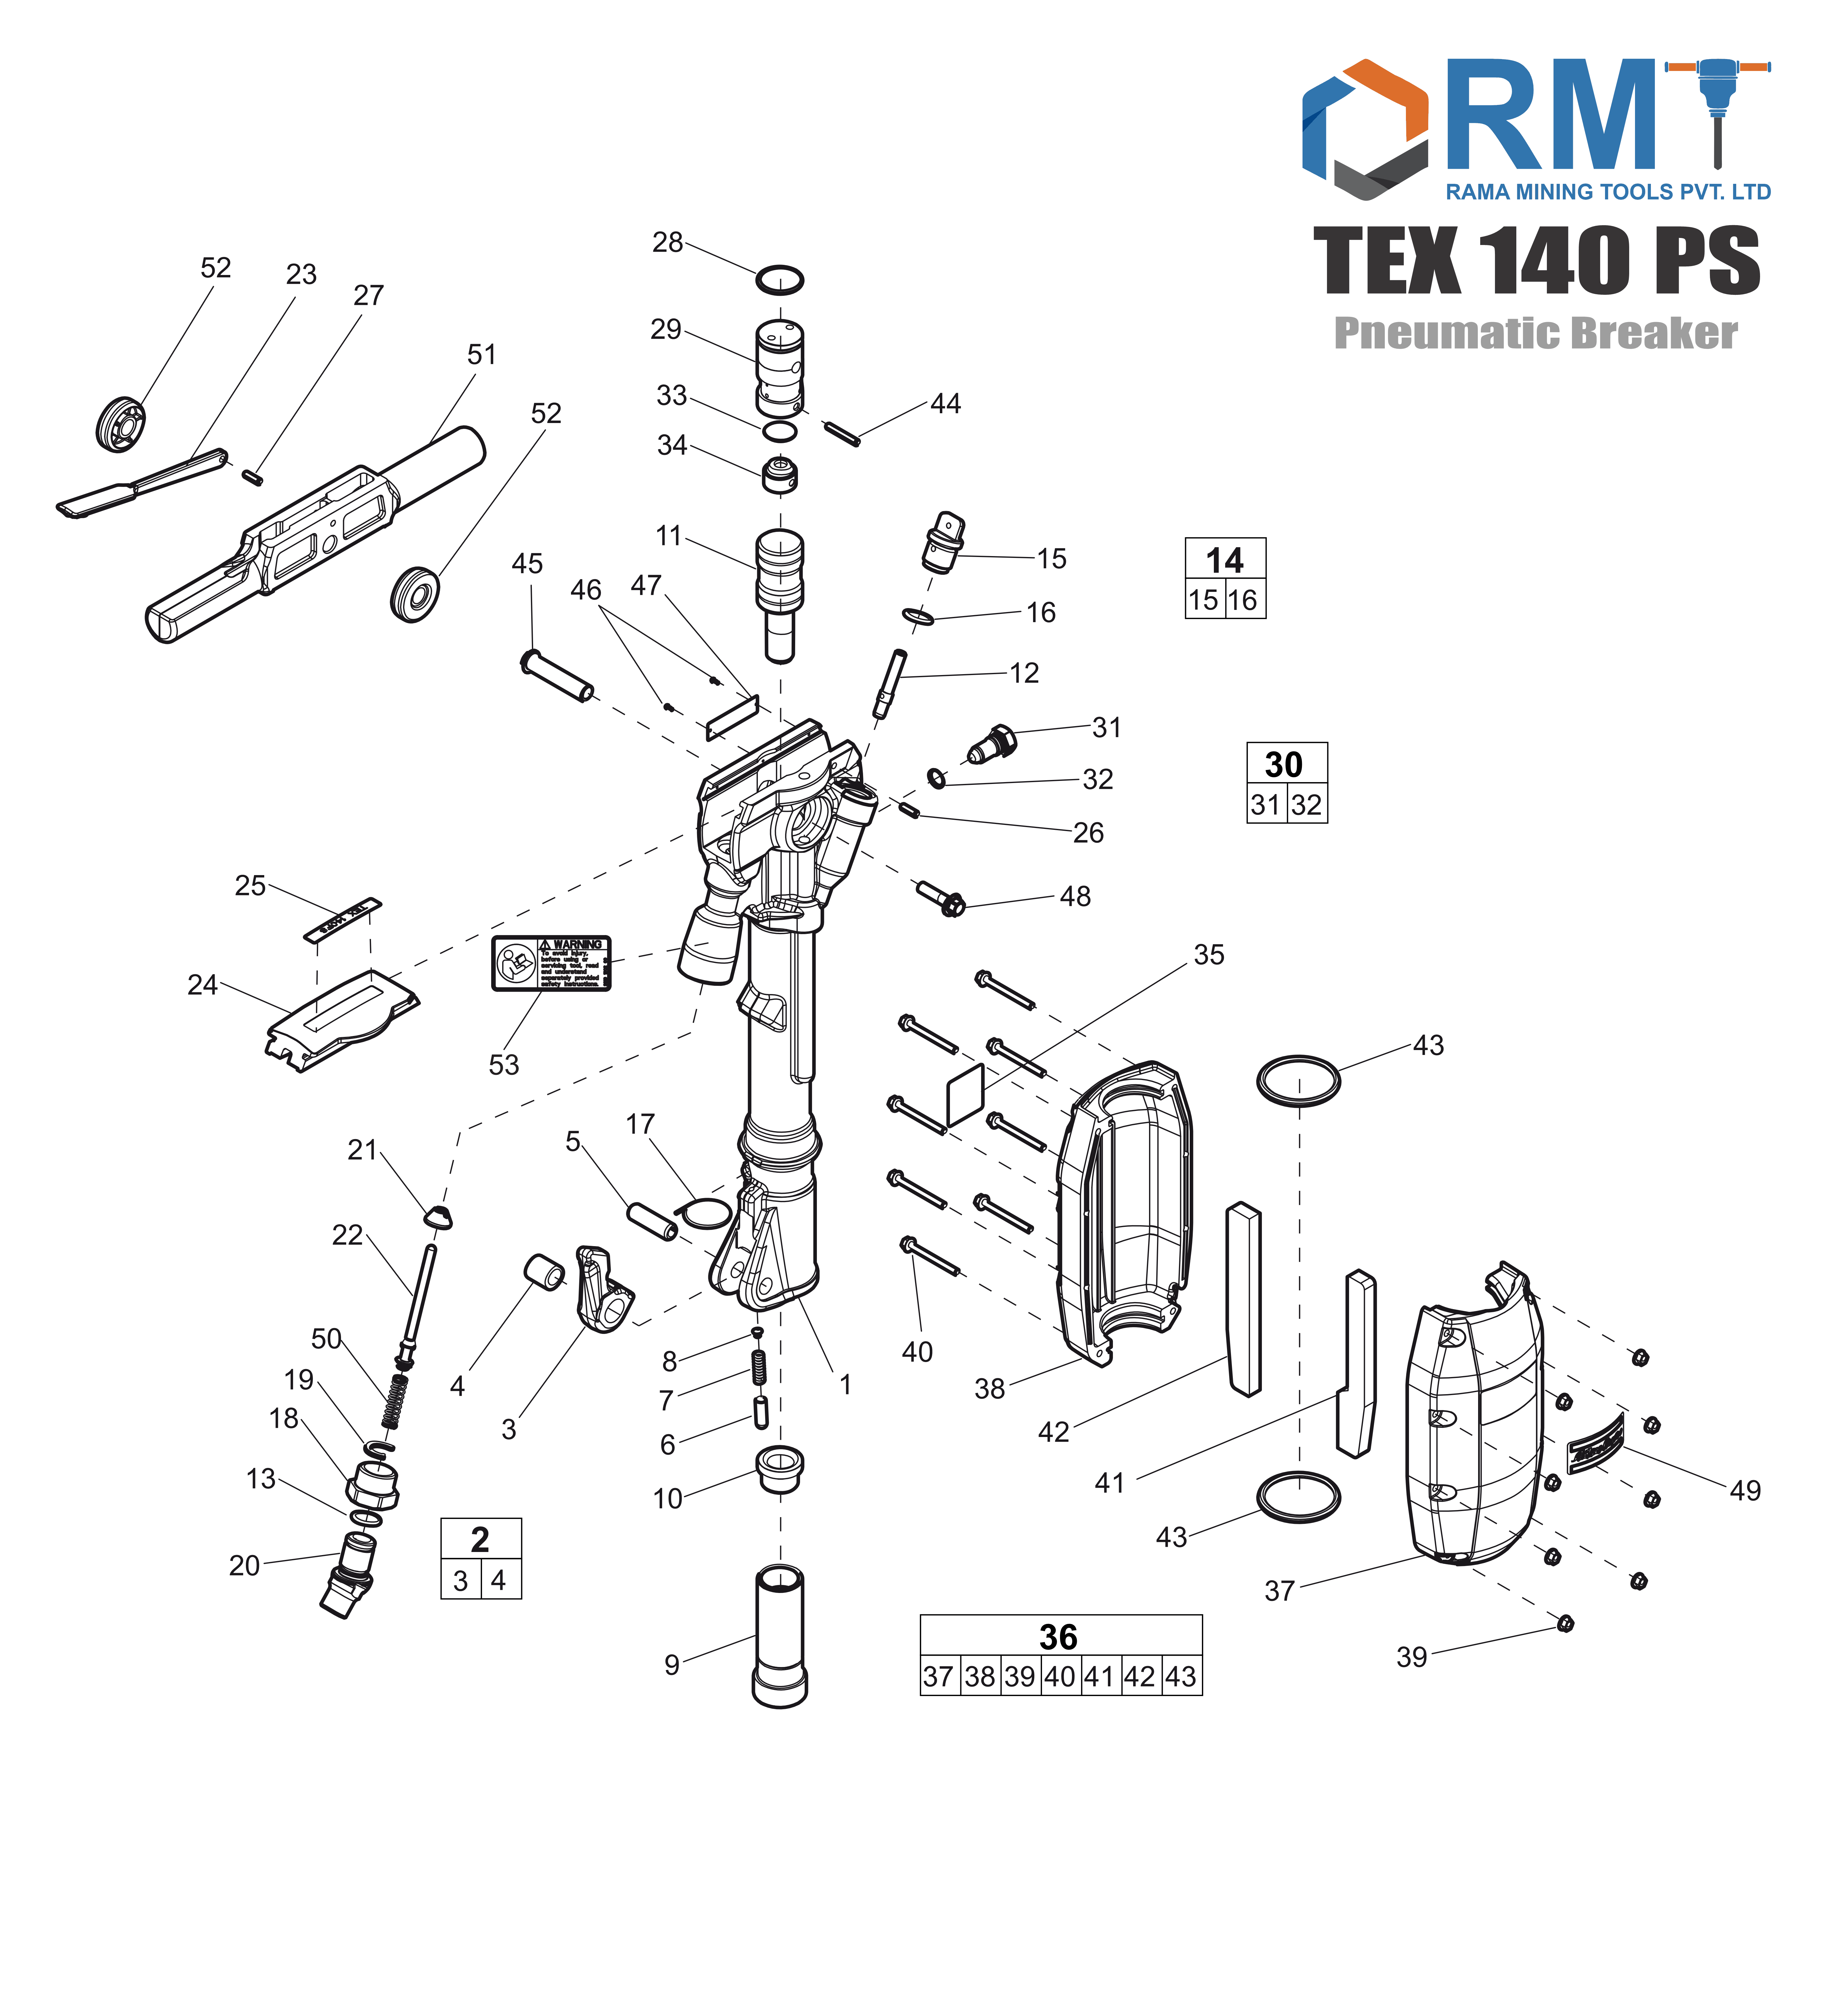 TEX 140 PS - Pneumatic Breaker